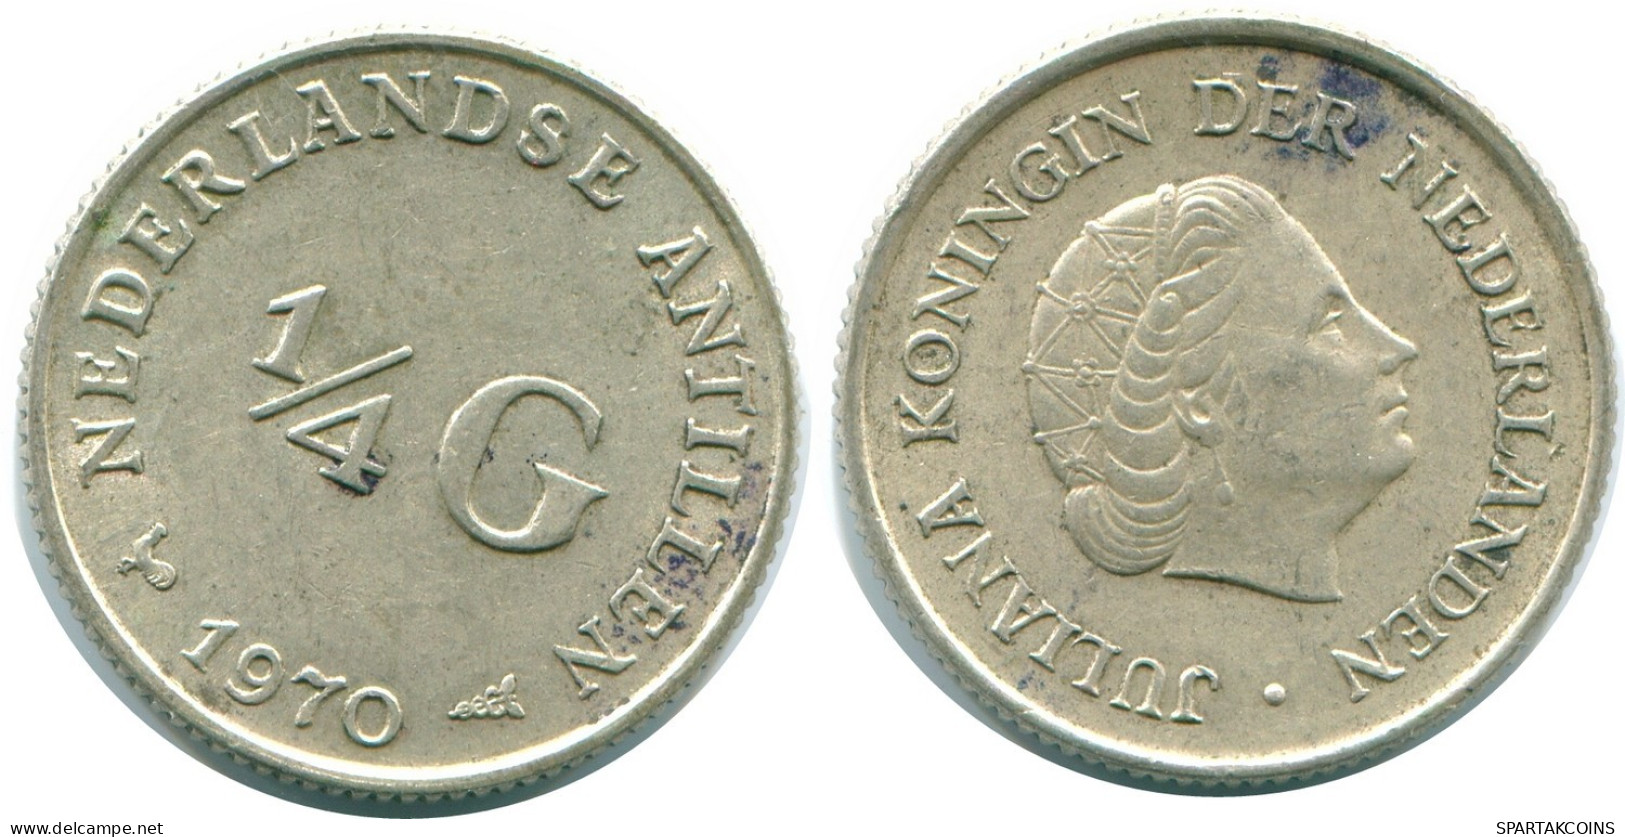 1/4 GULDEN 1970 NIEDERLÄNDISCHE ANTILLEN SILBER Koloniale Münze #NL11693.4.D.A - Antilles Néerlandaises